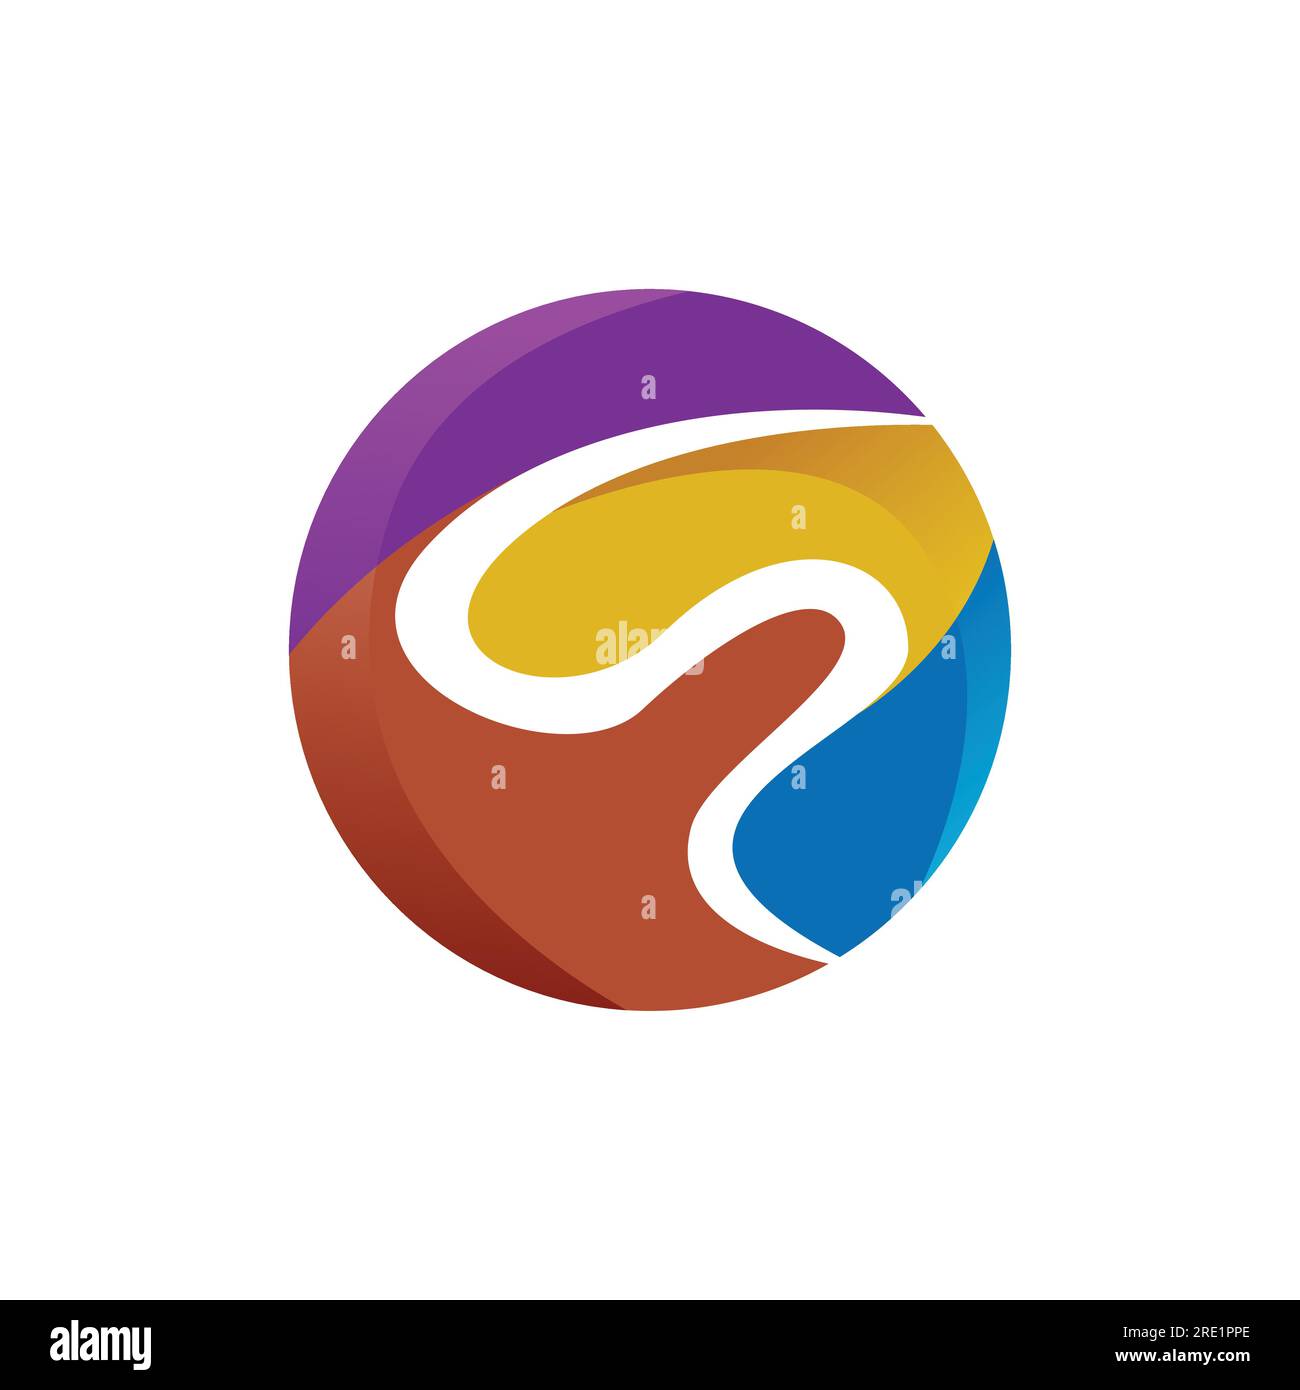 Modèle abstrait de logo de cercle coloré. Image vectorielle abstraite de logo de tourbillon de cercle décoratif Illustration de Vecteur